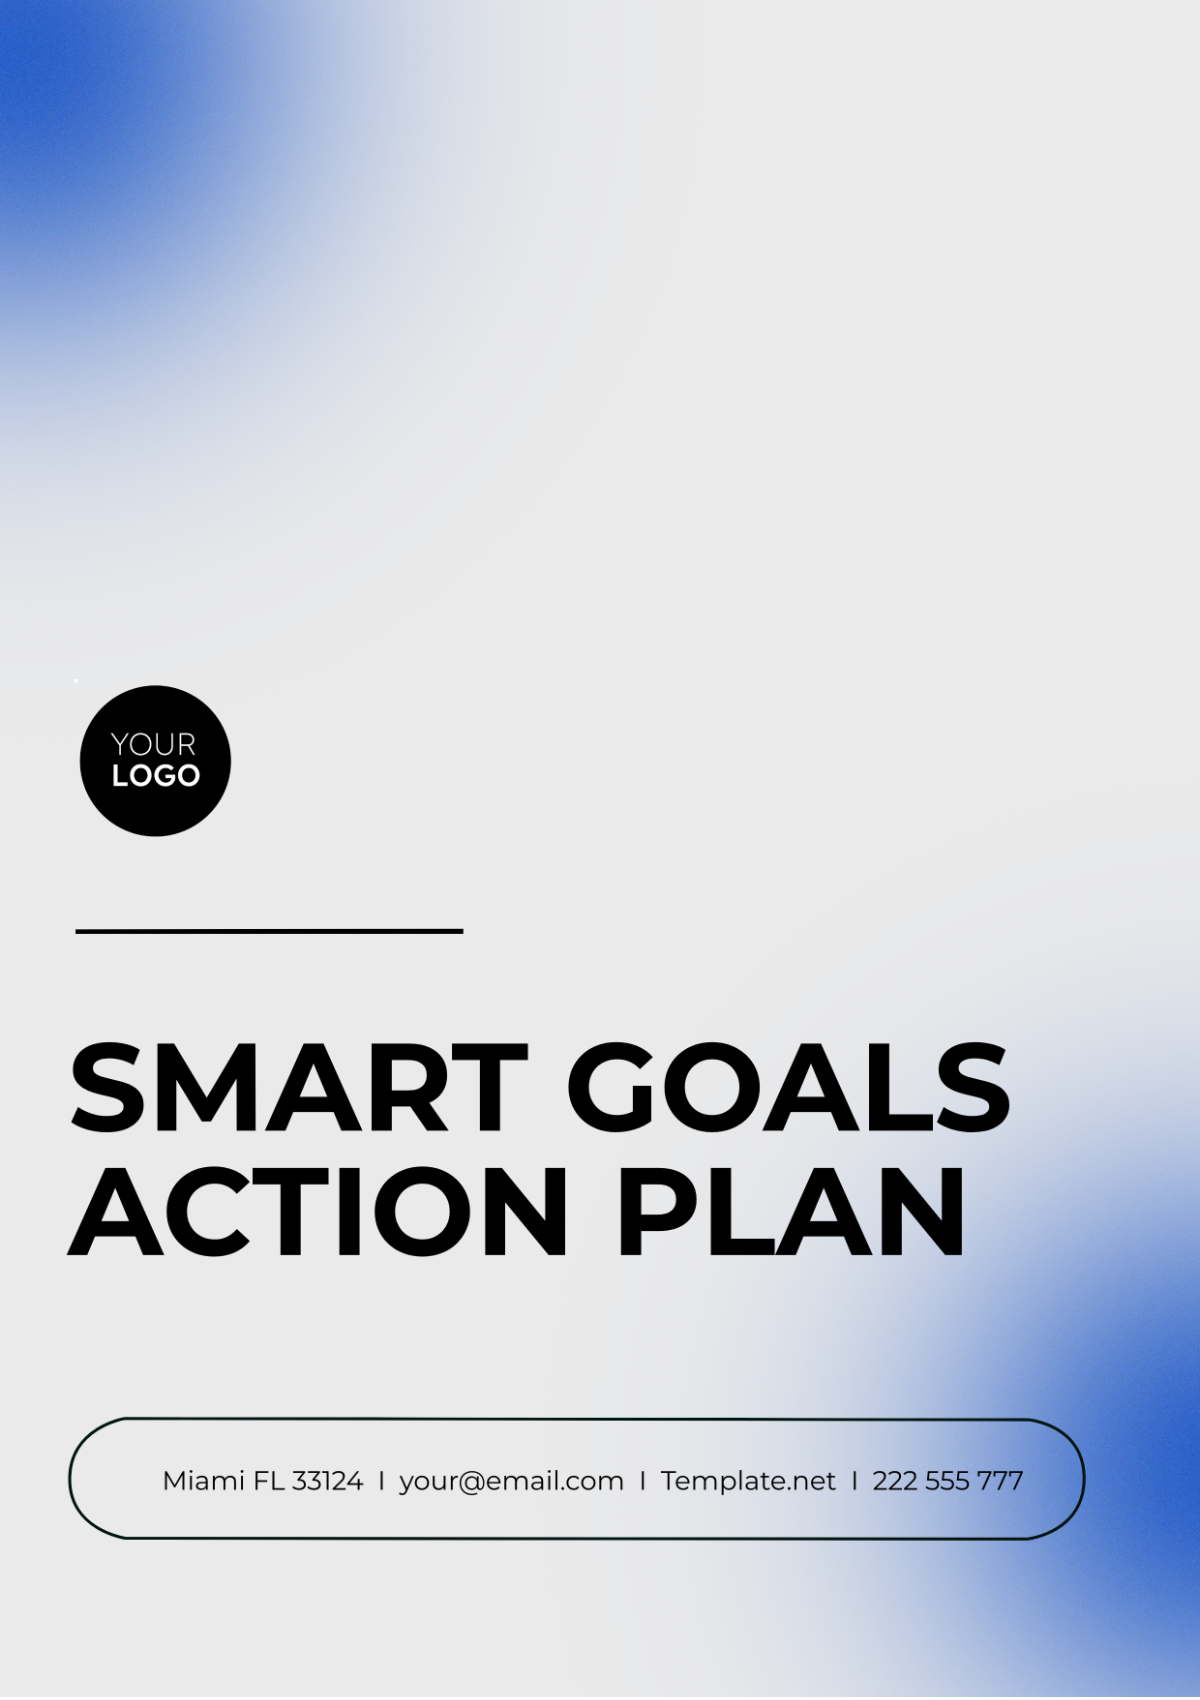 SMART Goals Action Plan Template